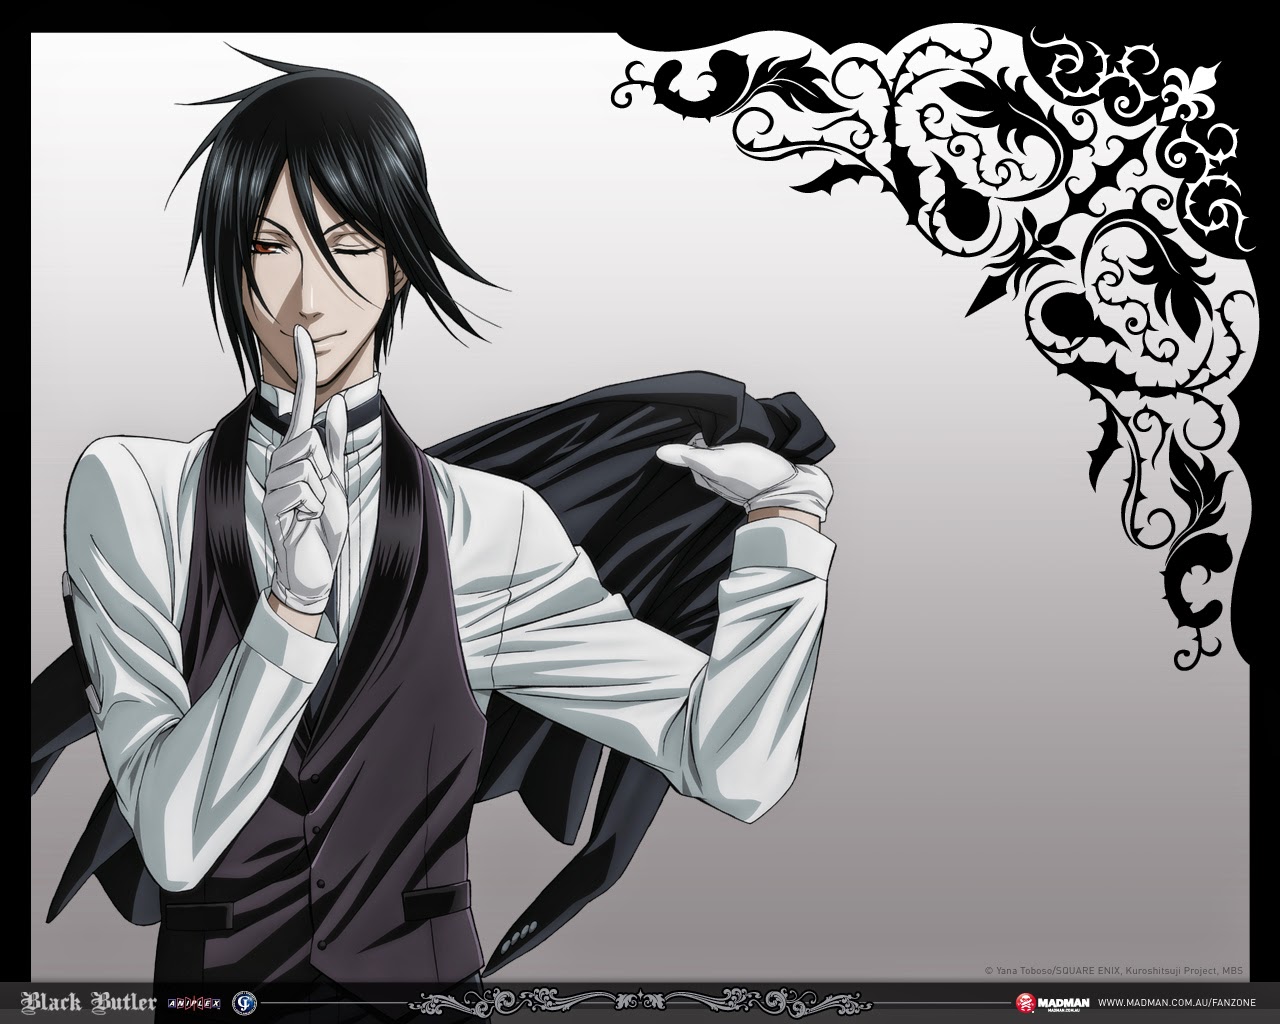 black butler wallpaper,cartoon,anime,illustration,black and white,black hair